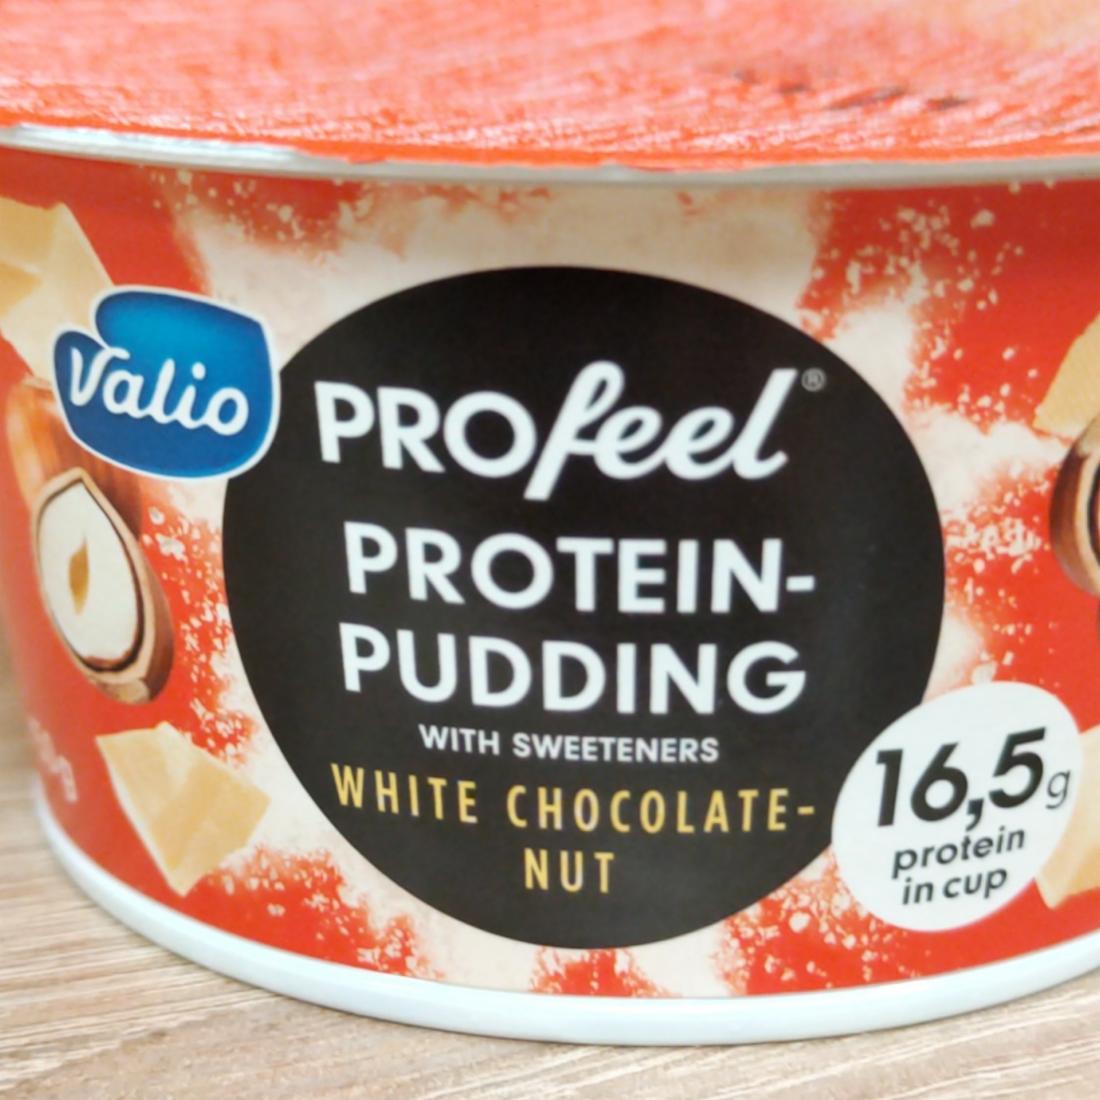 Фото - Протеиновый пудинг profeel White chocolate nut Valio